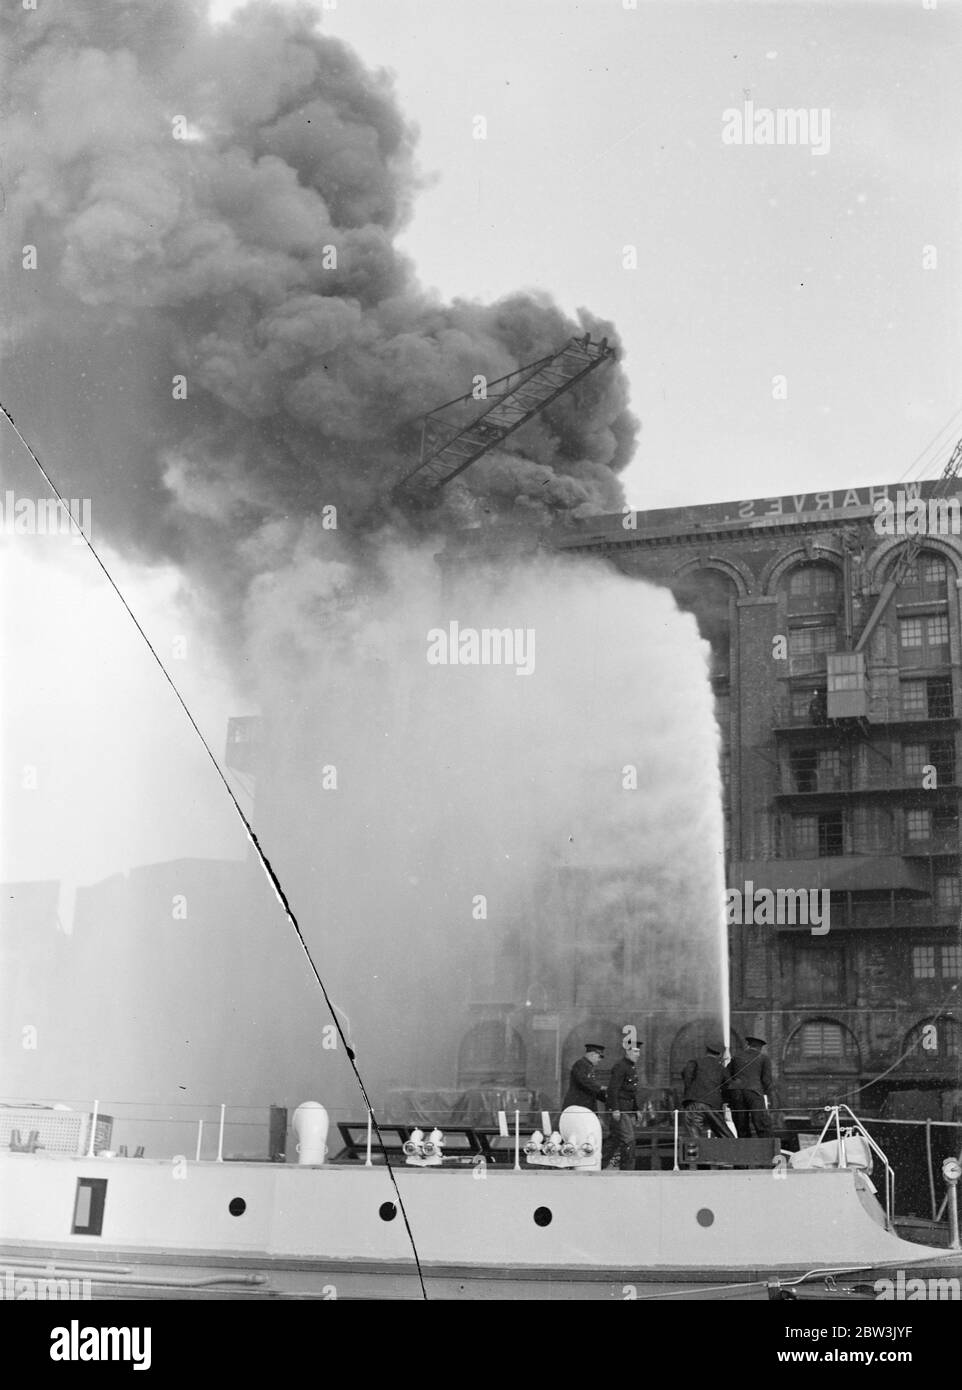 Les flotteurs de feu combattent le grand entrepôt de thé, qui menace le dockland de Londres . Combattre les flammes du feu flotte sur la Tamise . 25 septembre 1935 Banque D'Images